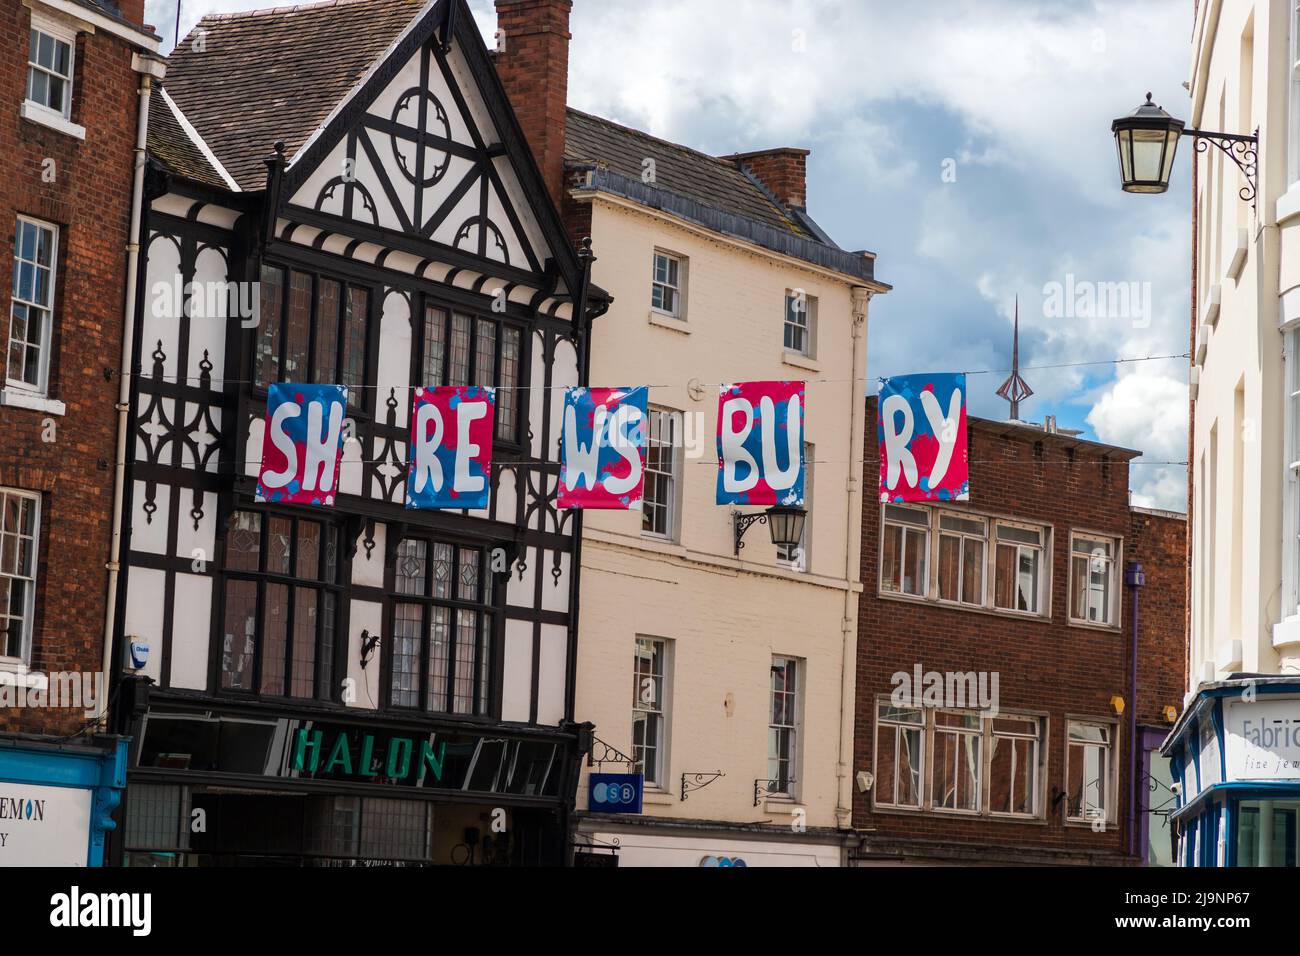 Shrewsbury town name bunting raised in the street in Shrewsbury Stock Photo